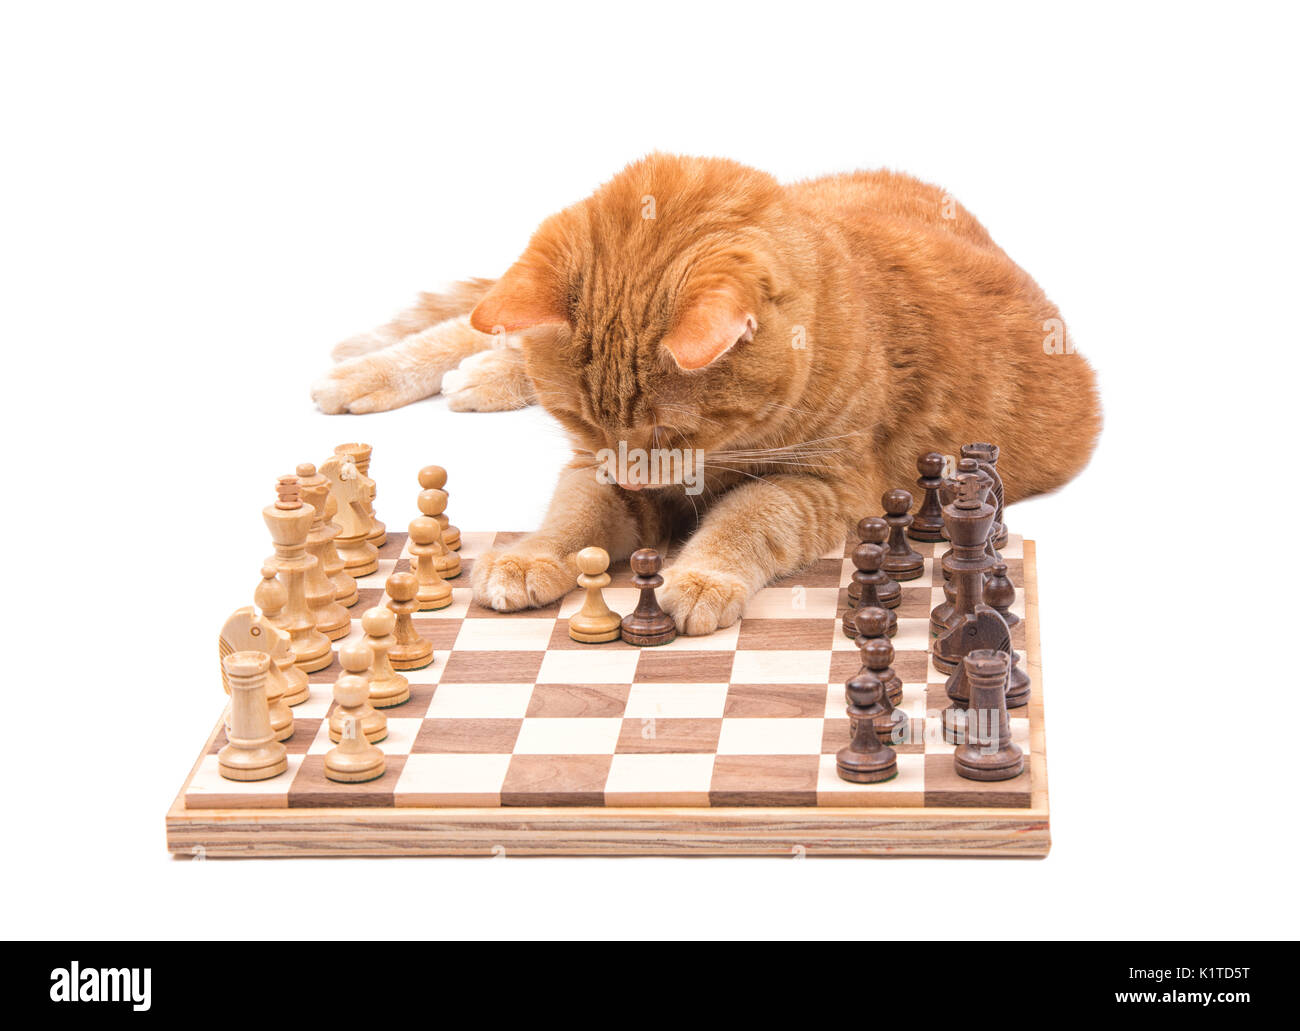 Lo zenzero tabby cat spostando delicatamente i pezzi di scacchi, isolato su bianco Foto Stock